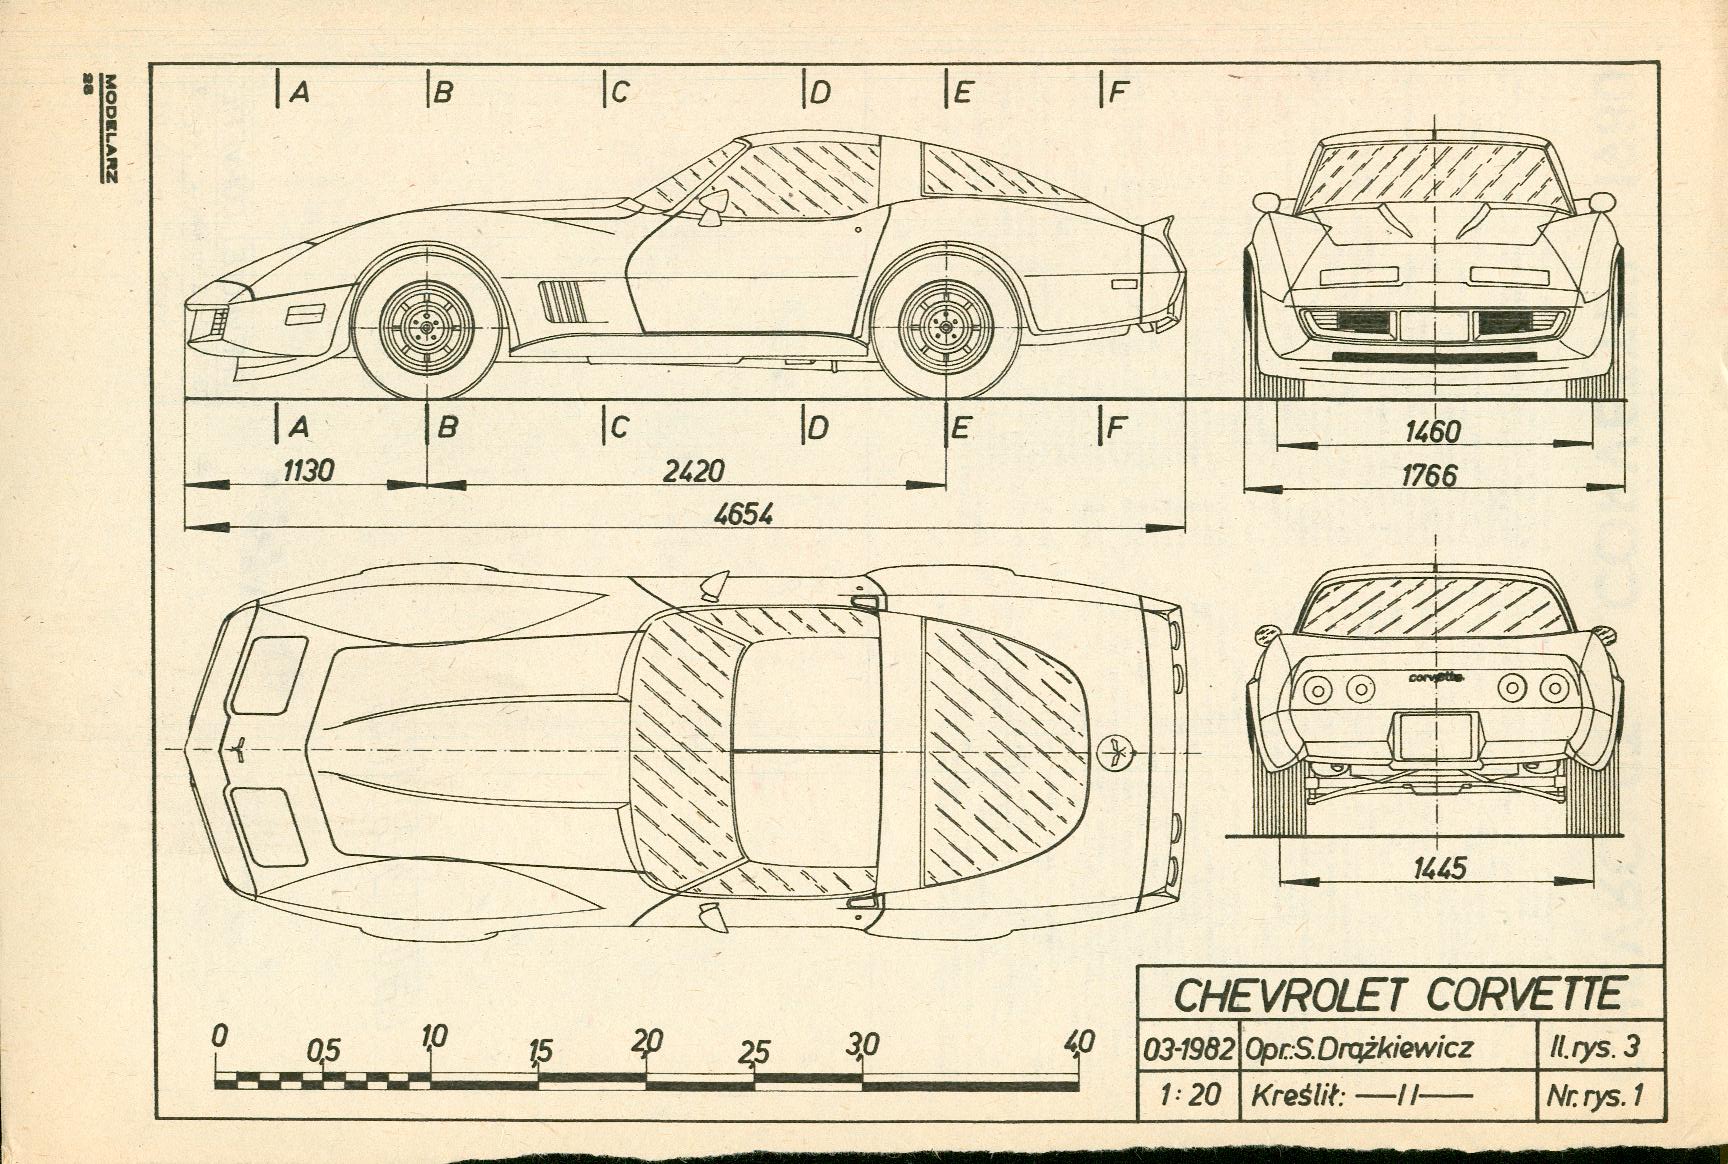 Chevrolet Corvette C3 blueprint